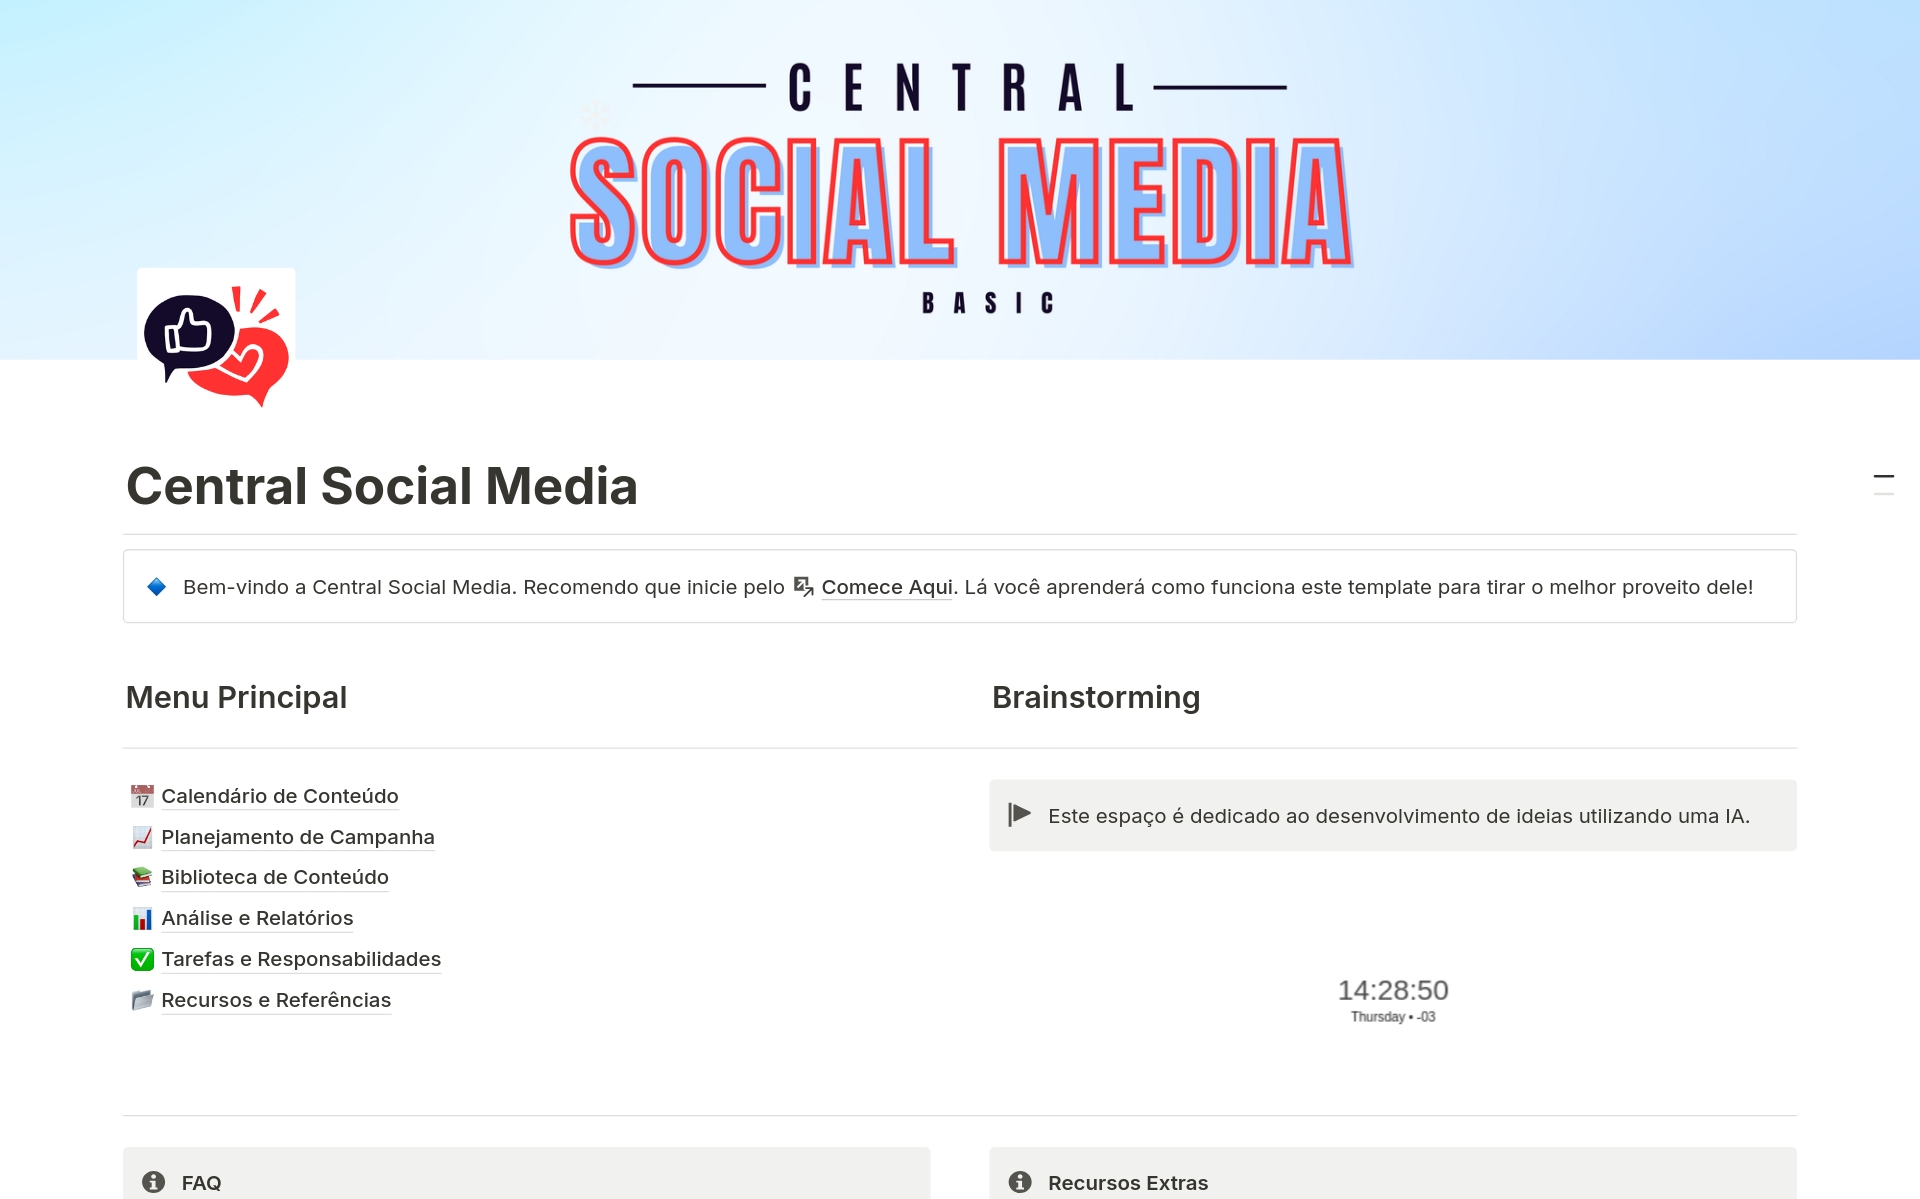 O "Central Social Media Basic" é um template simples e eficiente no Notion para gerenciar suas estratégias de marketing digital. Inclui funcionalidades básicas como calendário de conteúdo, planejamento de campanhas, biblioteca de conteúdo, análises e relatórios e muito mais.